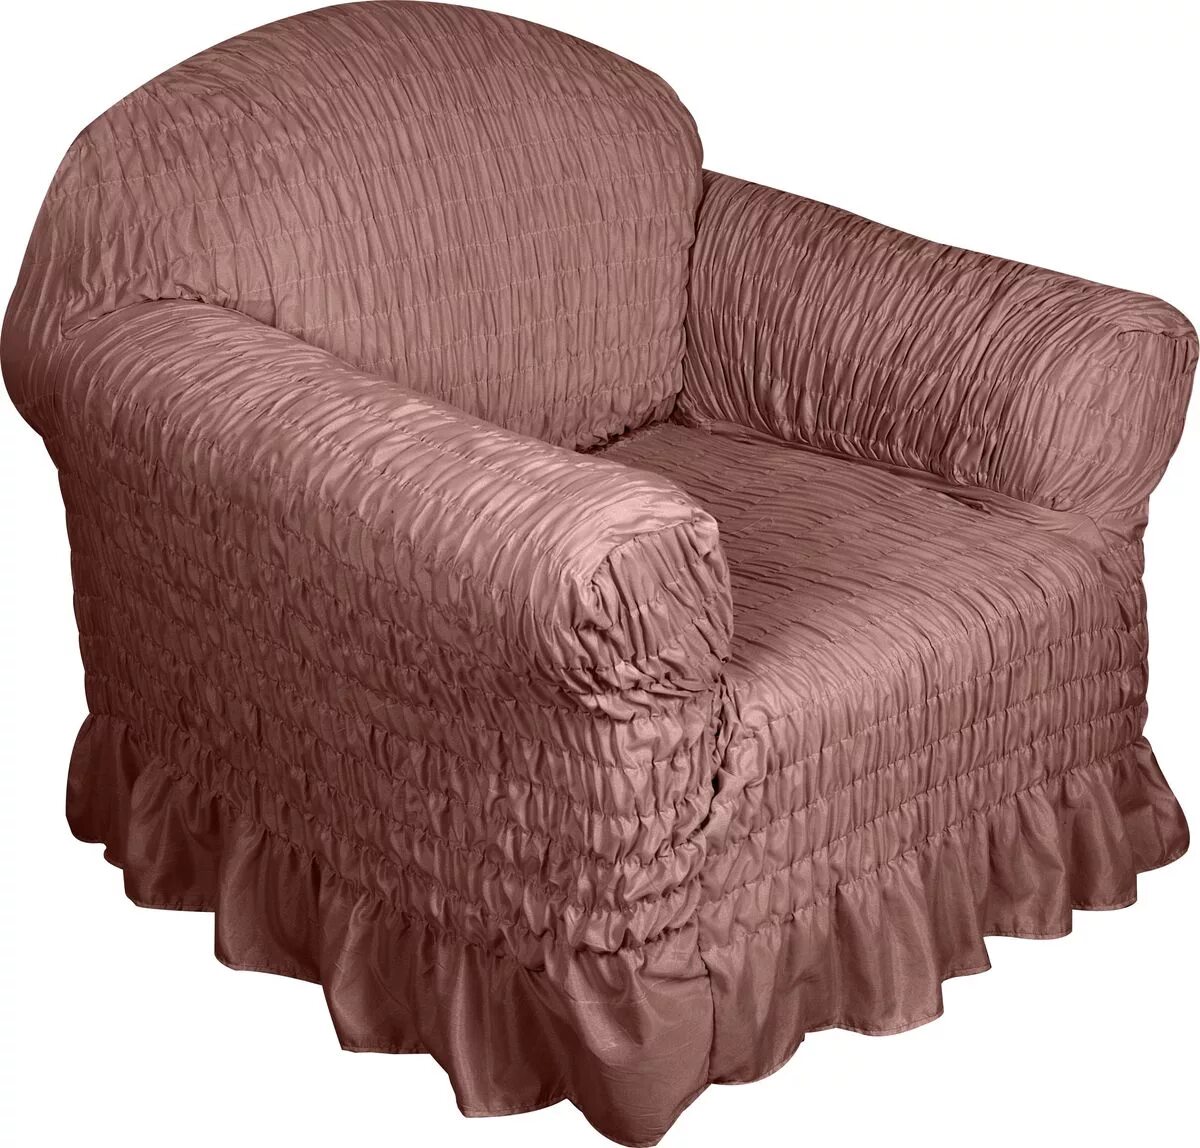 Купить в магазине чехлы на кресла. Еврочехол на диван и кресла. Чехол для кресла. Накидка на кресло. Накидки на диван и кресла.